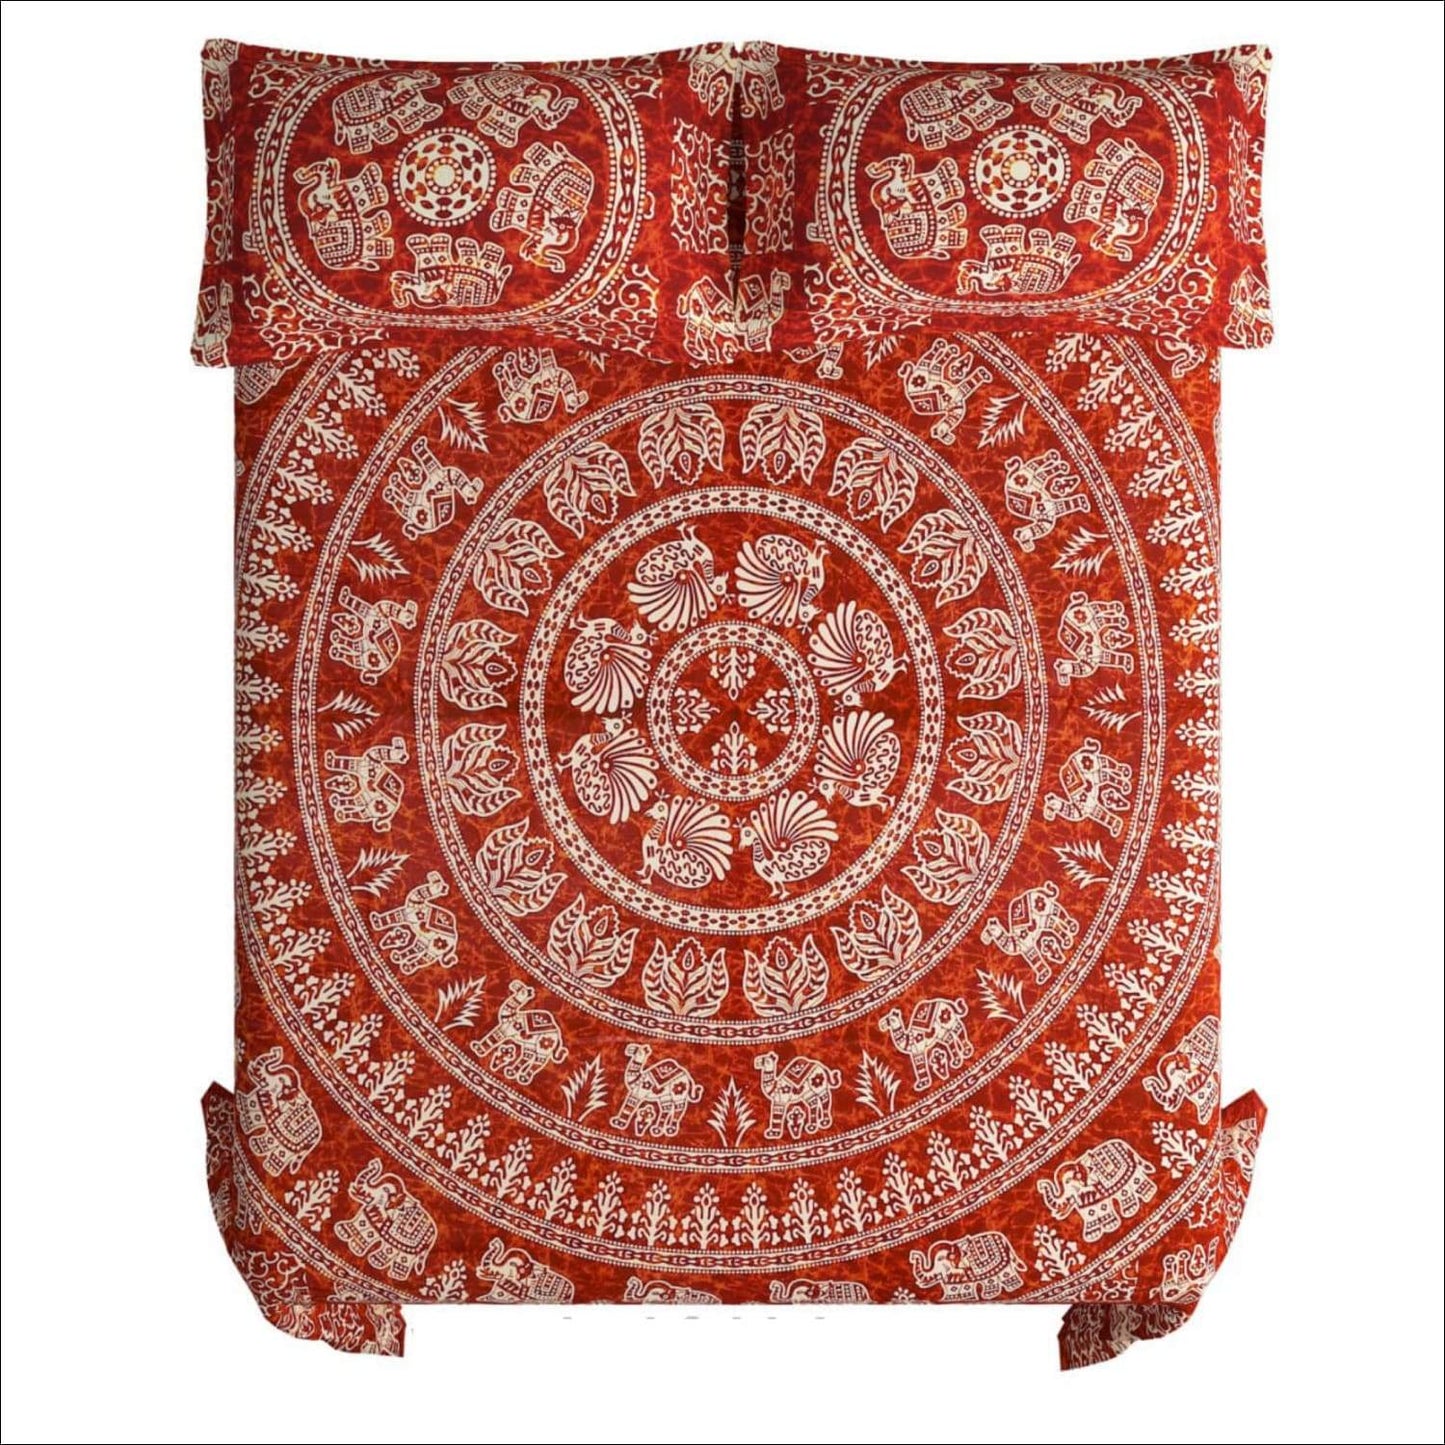 Rajasthani Elephant Cotton Jaipuri Bedsheet (Double bed)- Red